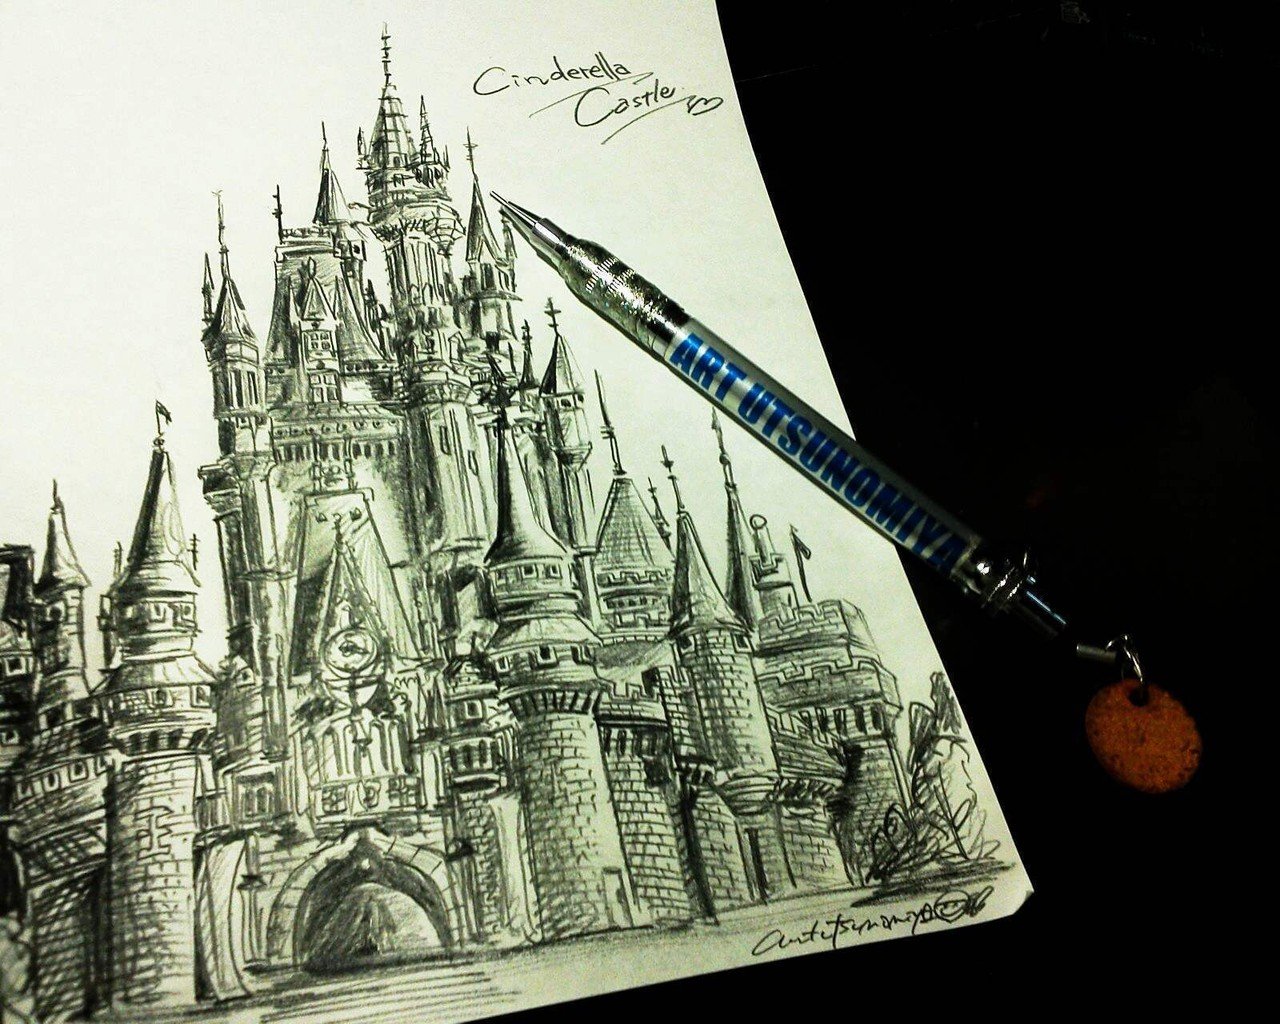 Cinderella Castle 昨日 めちゃくちゃリアルな絵を見つけて ダメージを食らった記念に お城の第二弾描いてみました リアル というか かっこいい絵でした アート宇都宮 Note